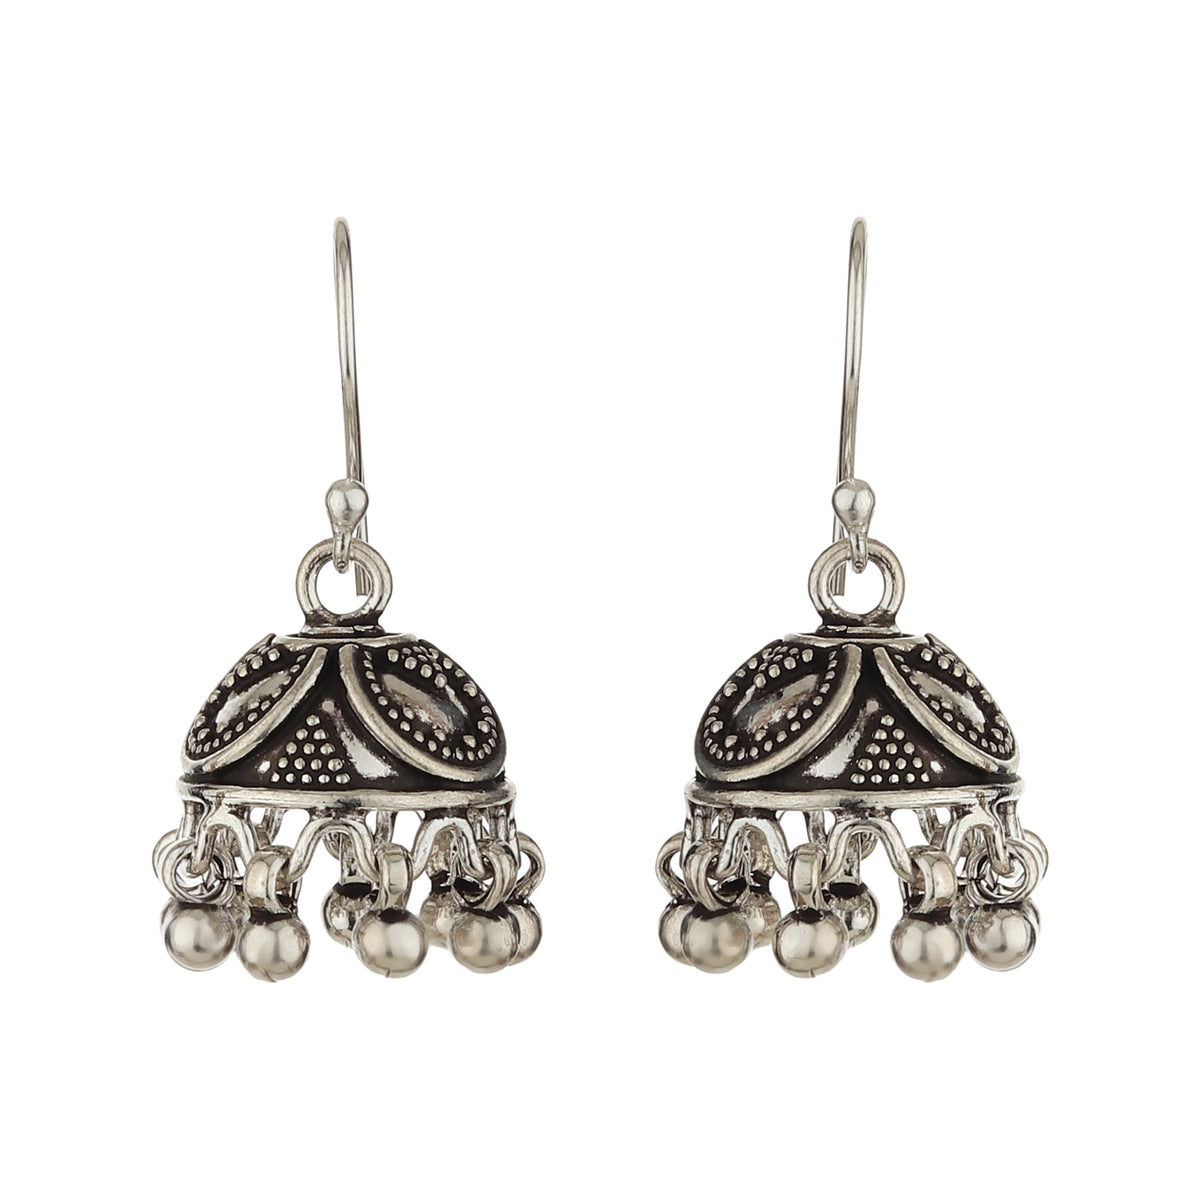 Silvermark - Antique Oxidized silver earrings